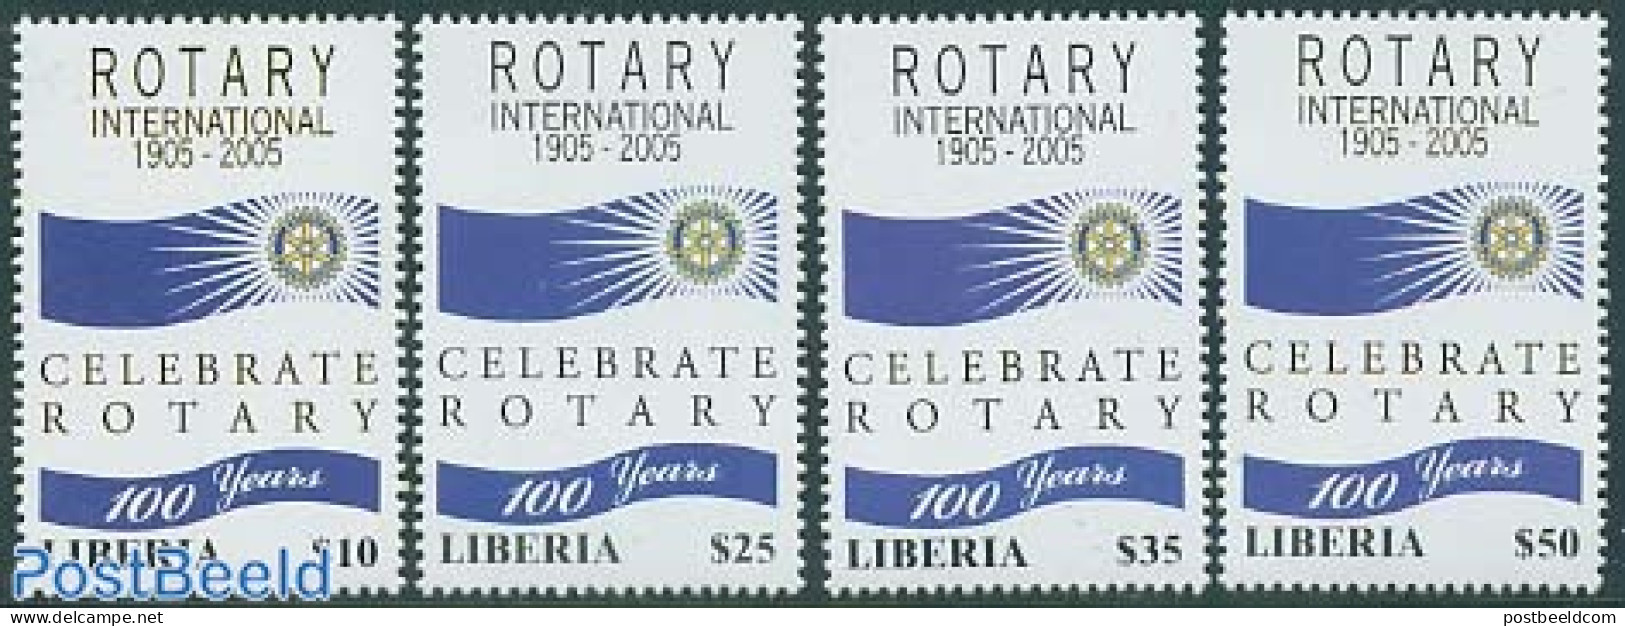 Liberia 2005 Rotary Centenary 4v, Mint NH, Various - Rotary - Rotary, Lions Club